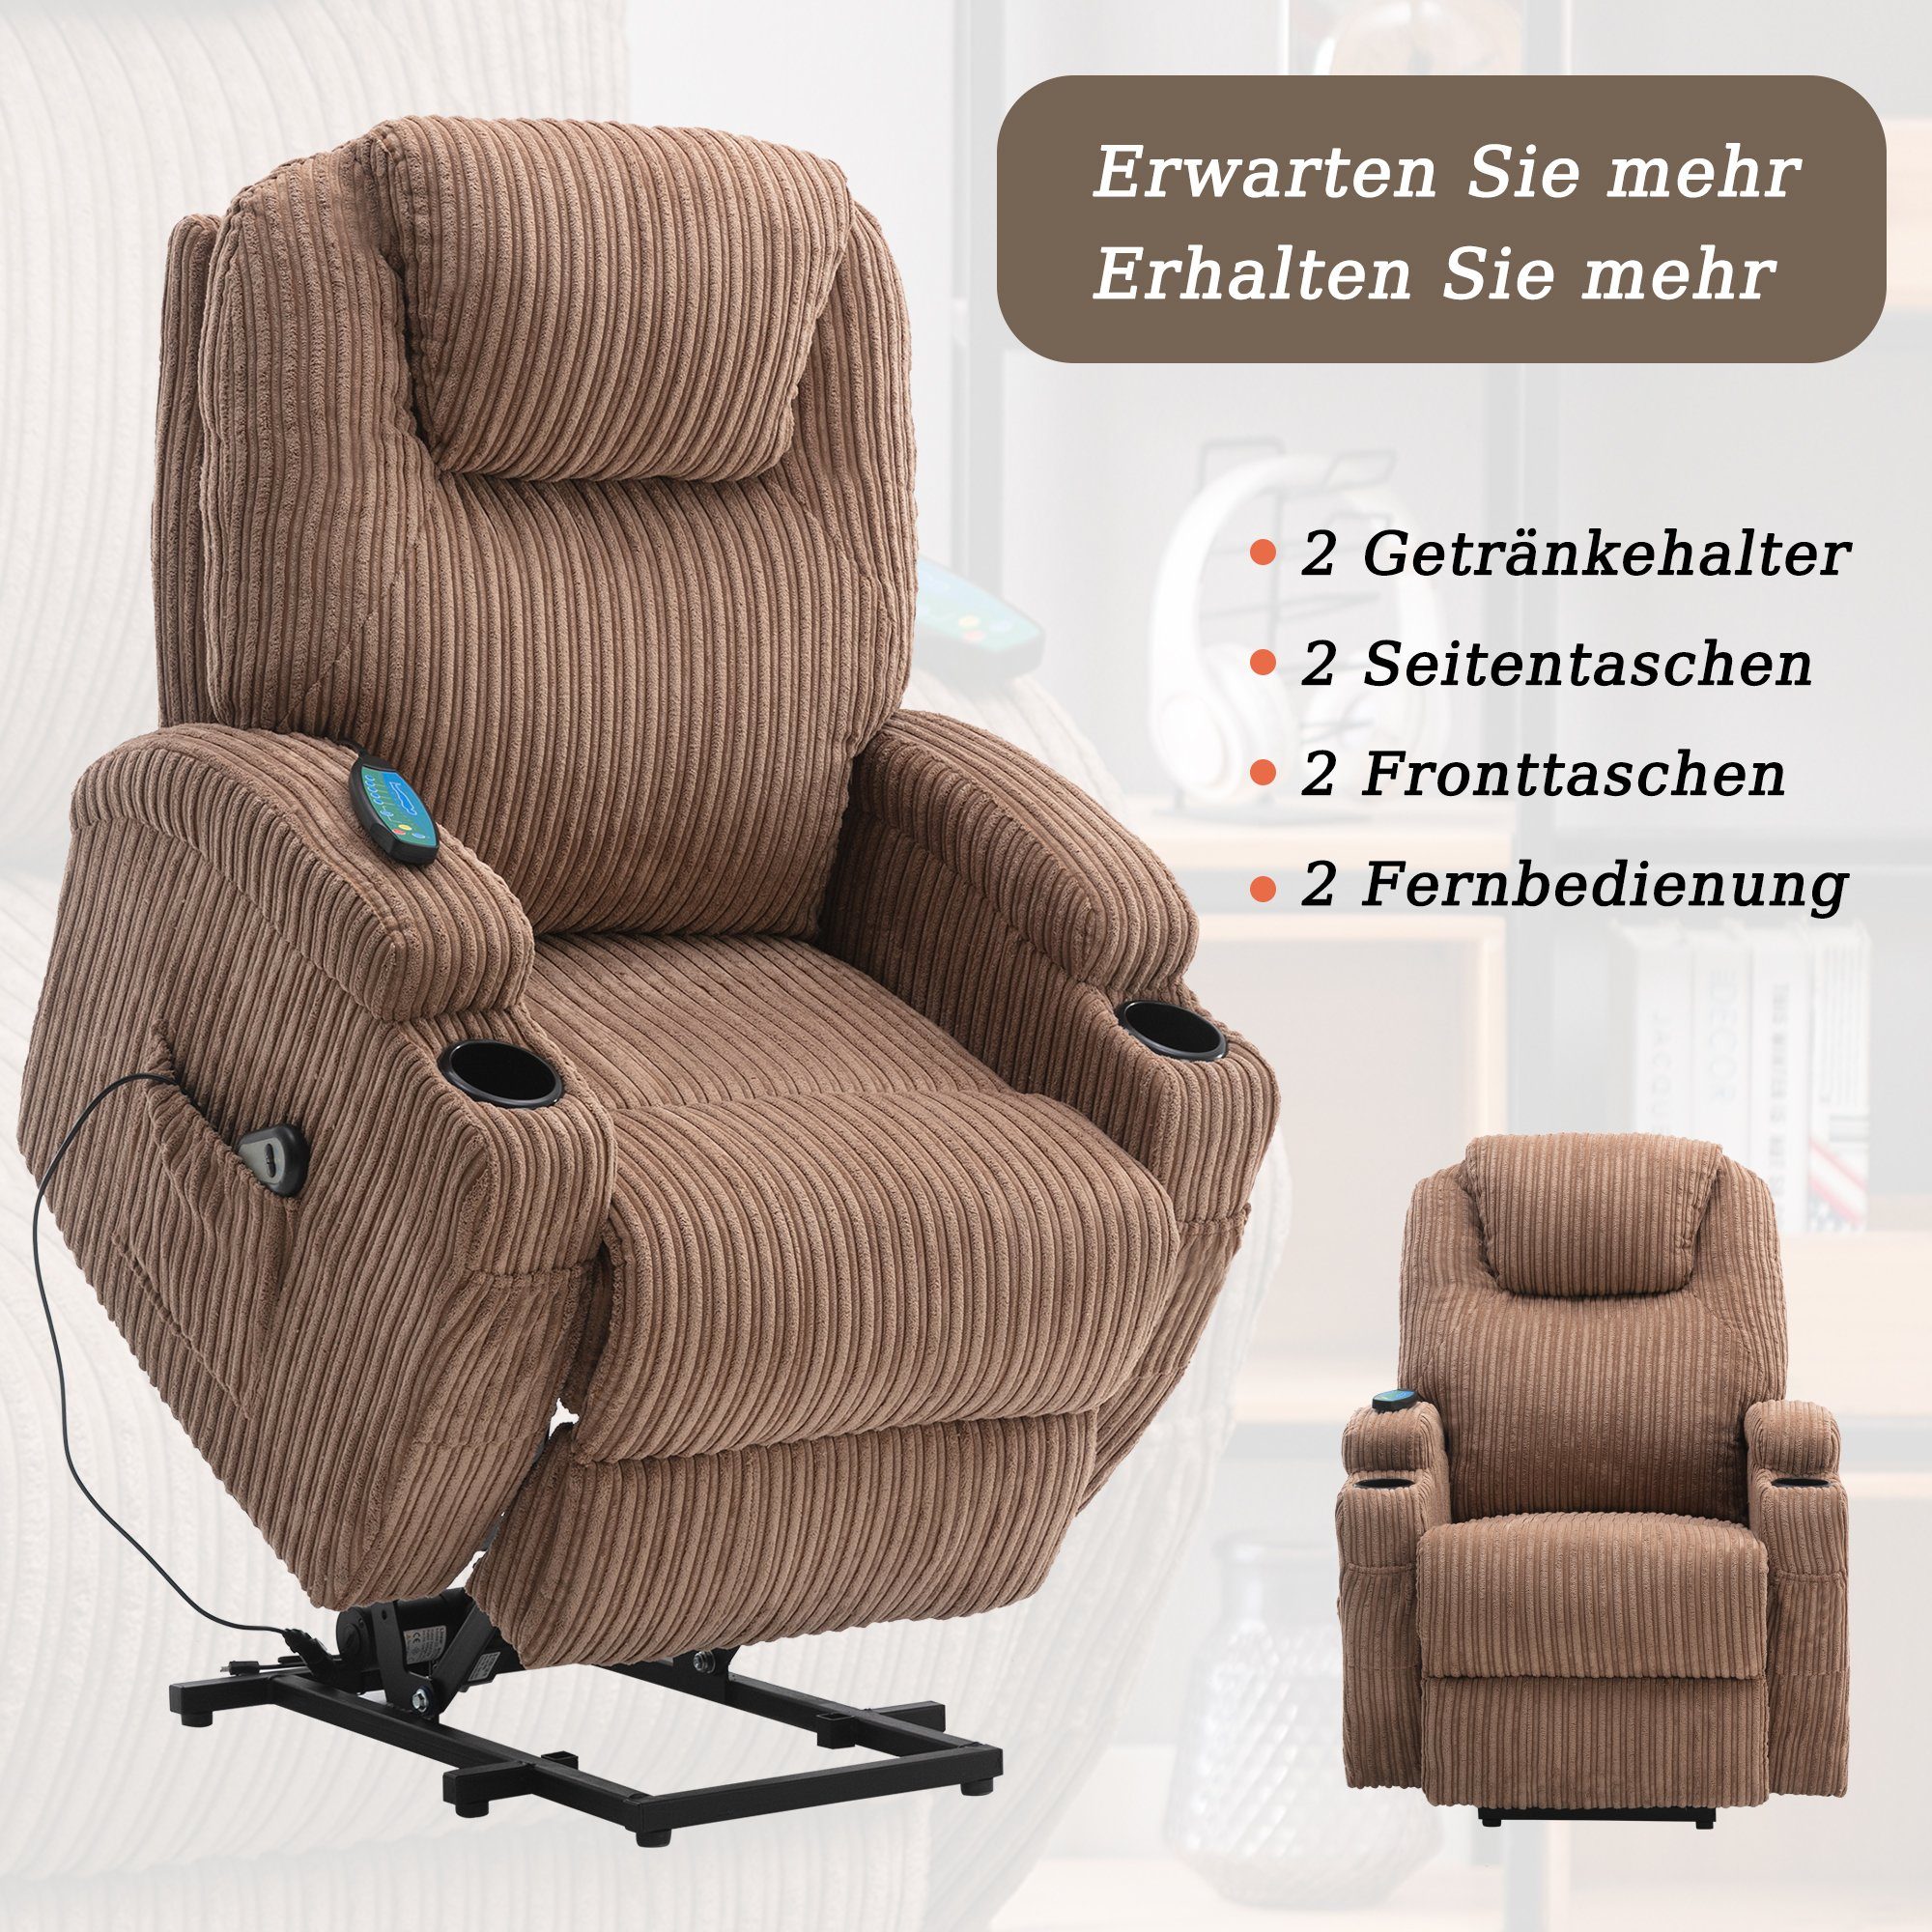 OKWISH TV-Sessel Elektrisch verstellbarer Massagesessel elektrisch mit Getränkehaltern, Seitentaschen Sesse, und Menschen, für 2 Braun Fernbedienung Stoff-Liegesofa), (Massagesessel ältere verstellbarer